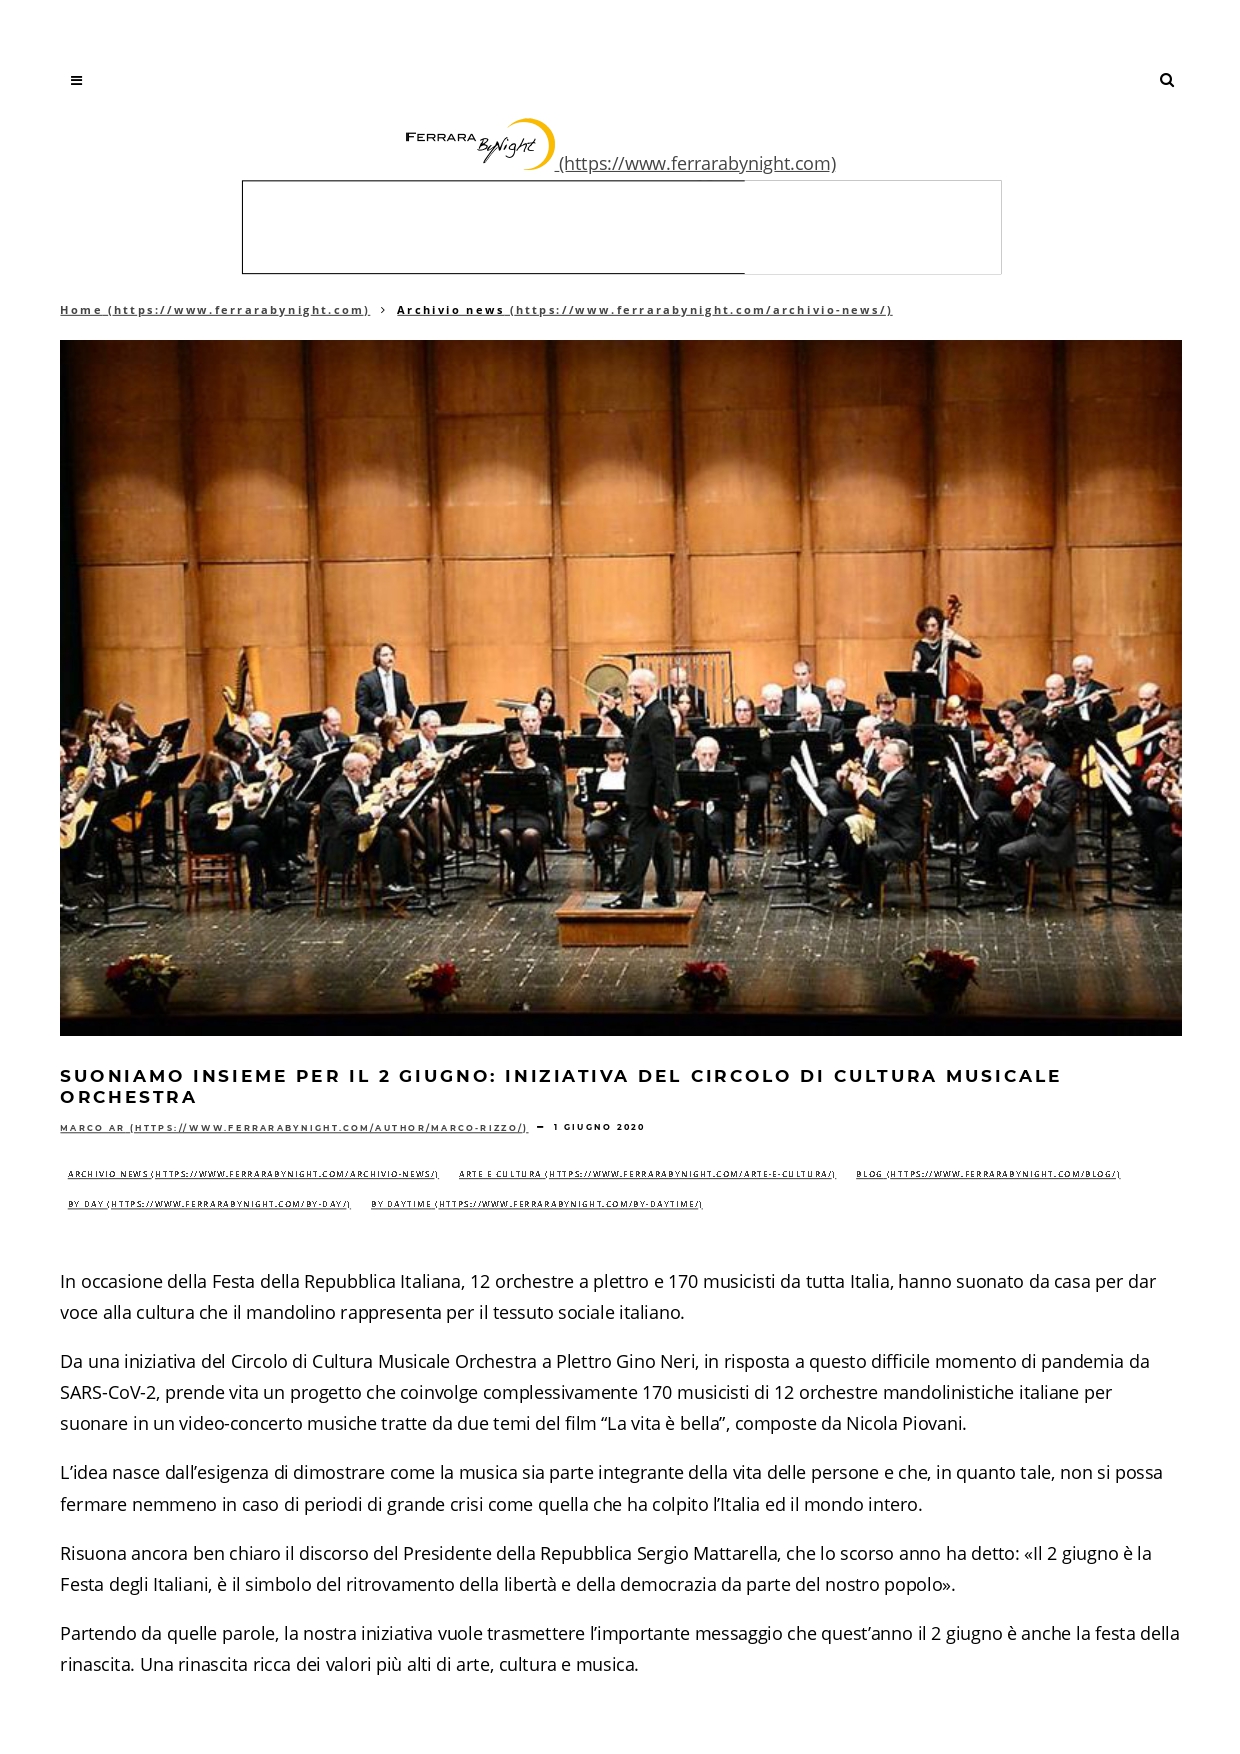 Suoniamo insieme per il 2 giugno_ iniziativa del Circolo di Cultura Musicale Orchestra _ Ferrara By Night_page-0001